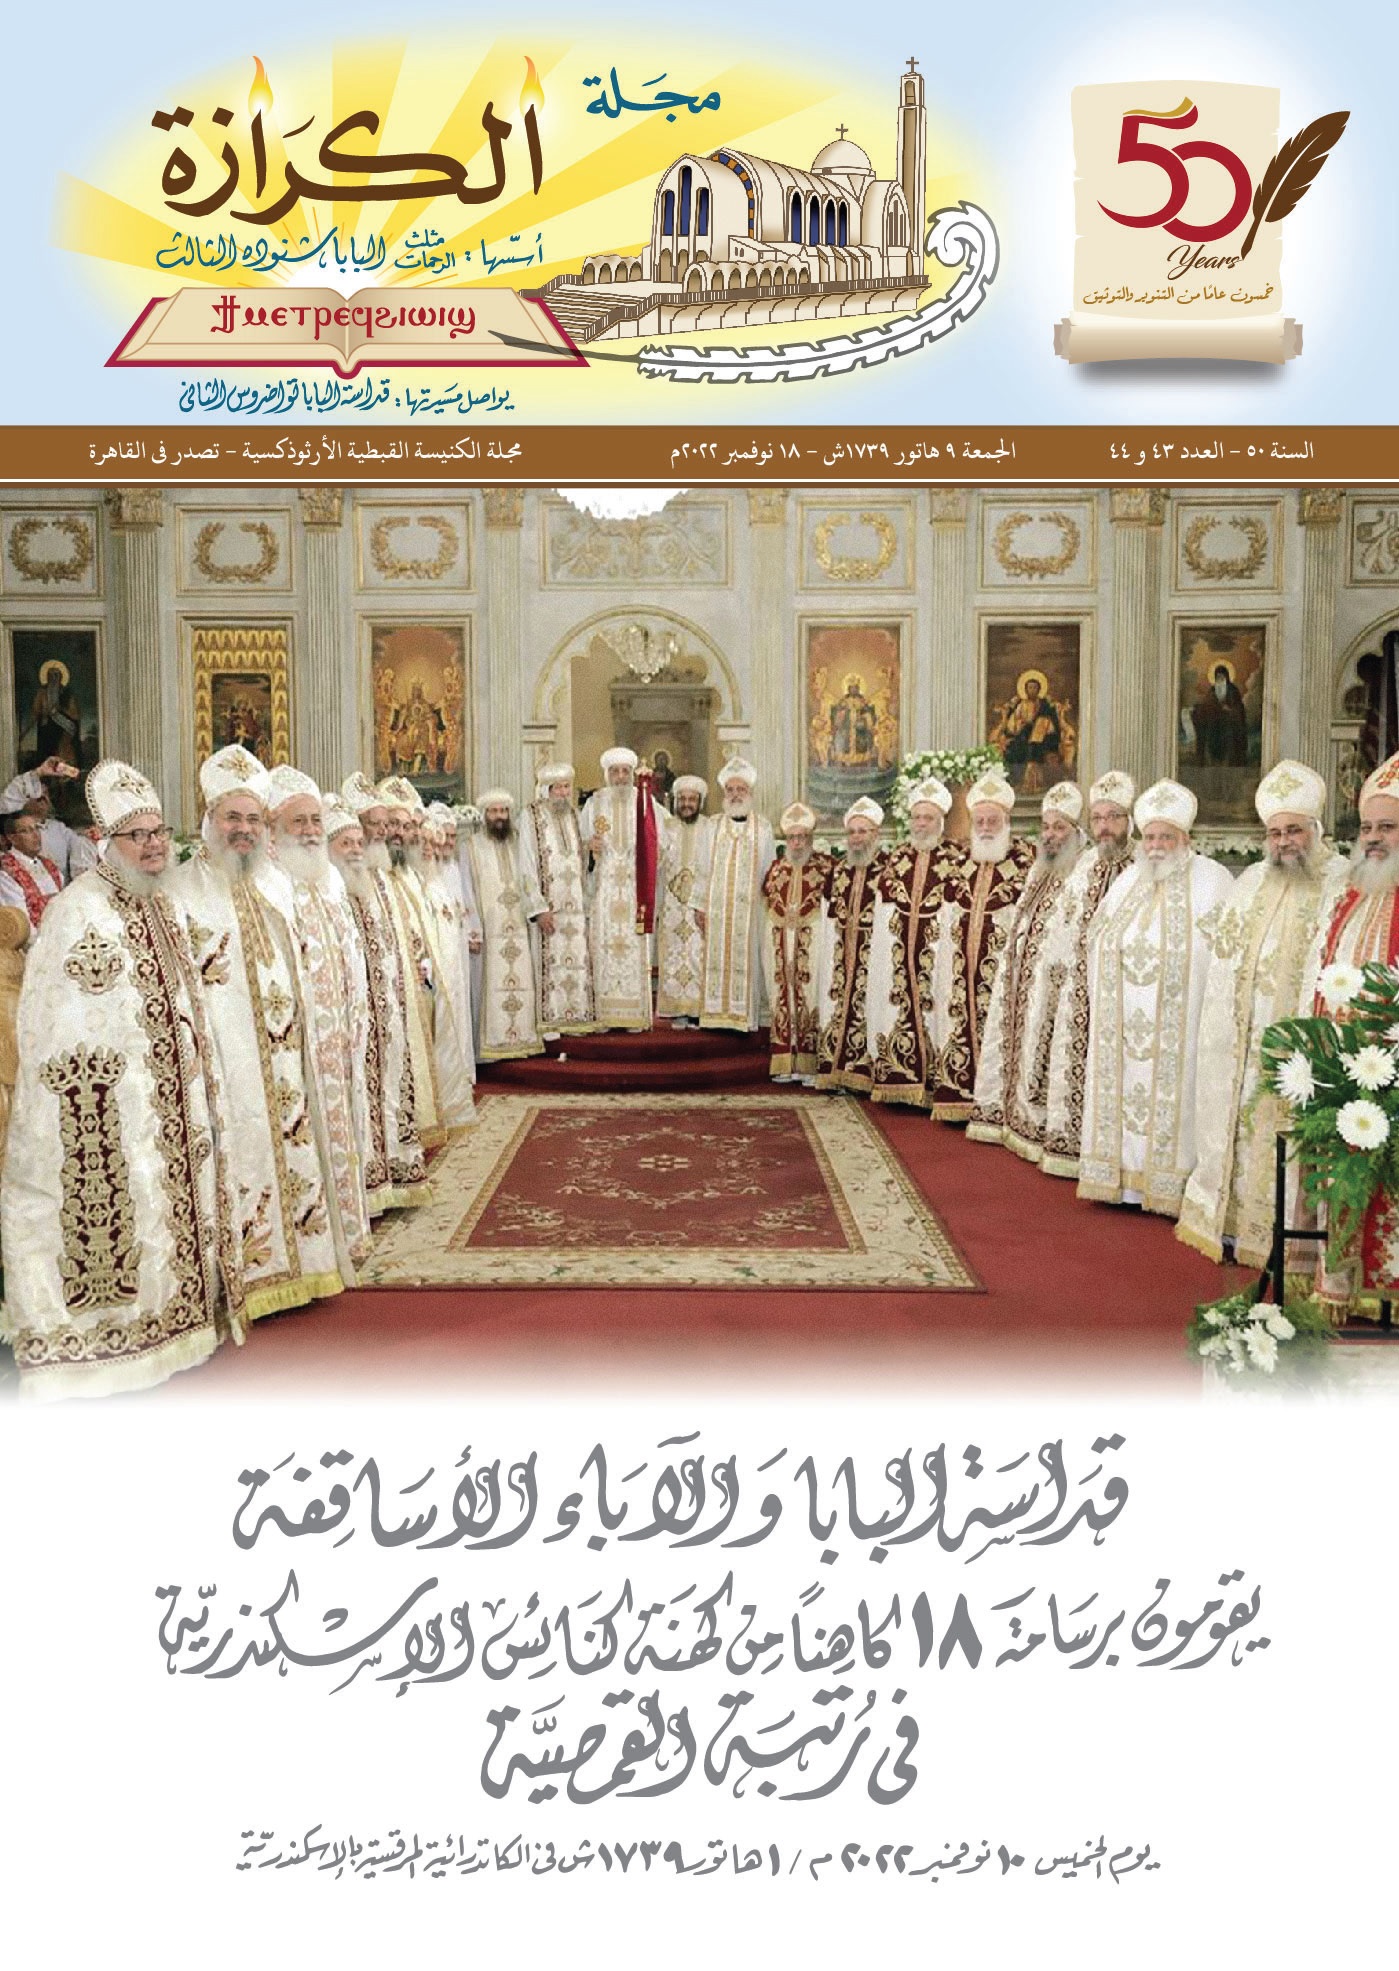 قداسة البابا والاباء الاساقفه يقومون برسامة 18 كاهنا من كهنه كنائس الإسكندريه فى رتبة القمصية 